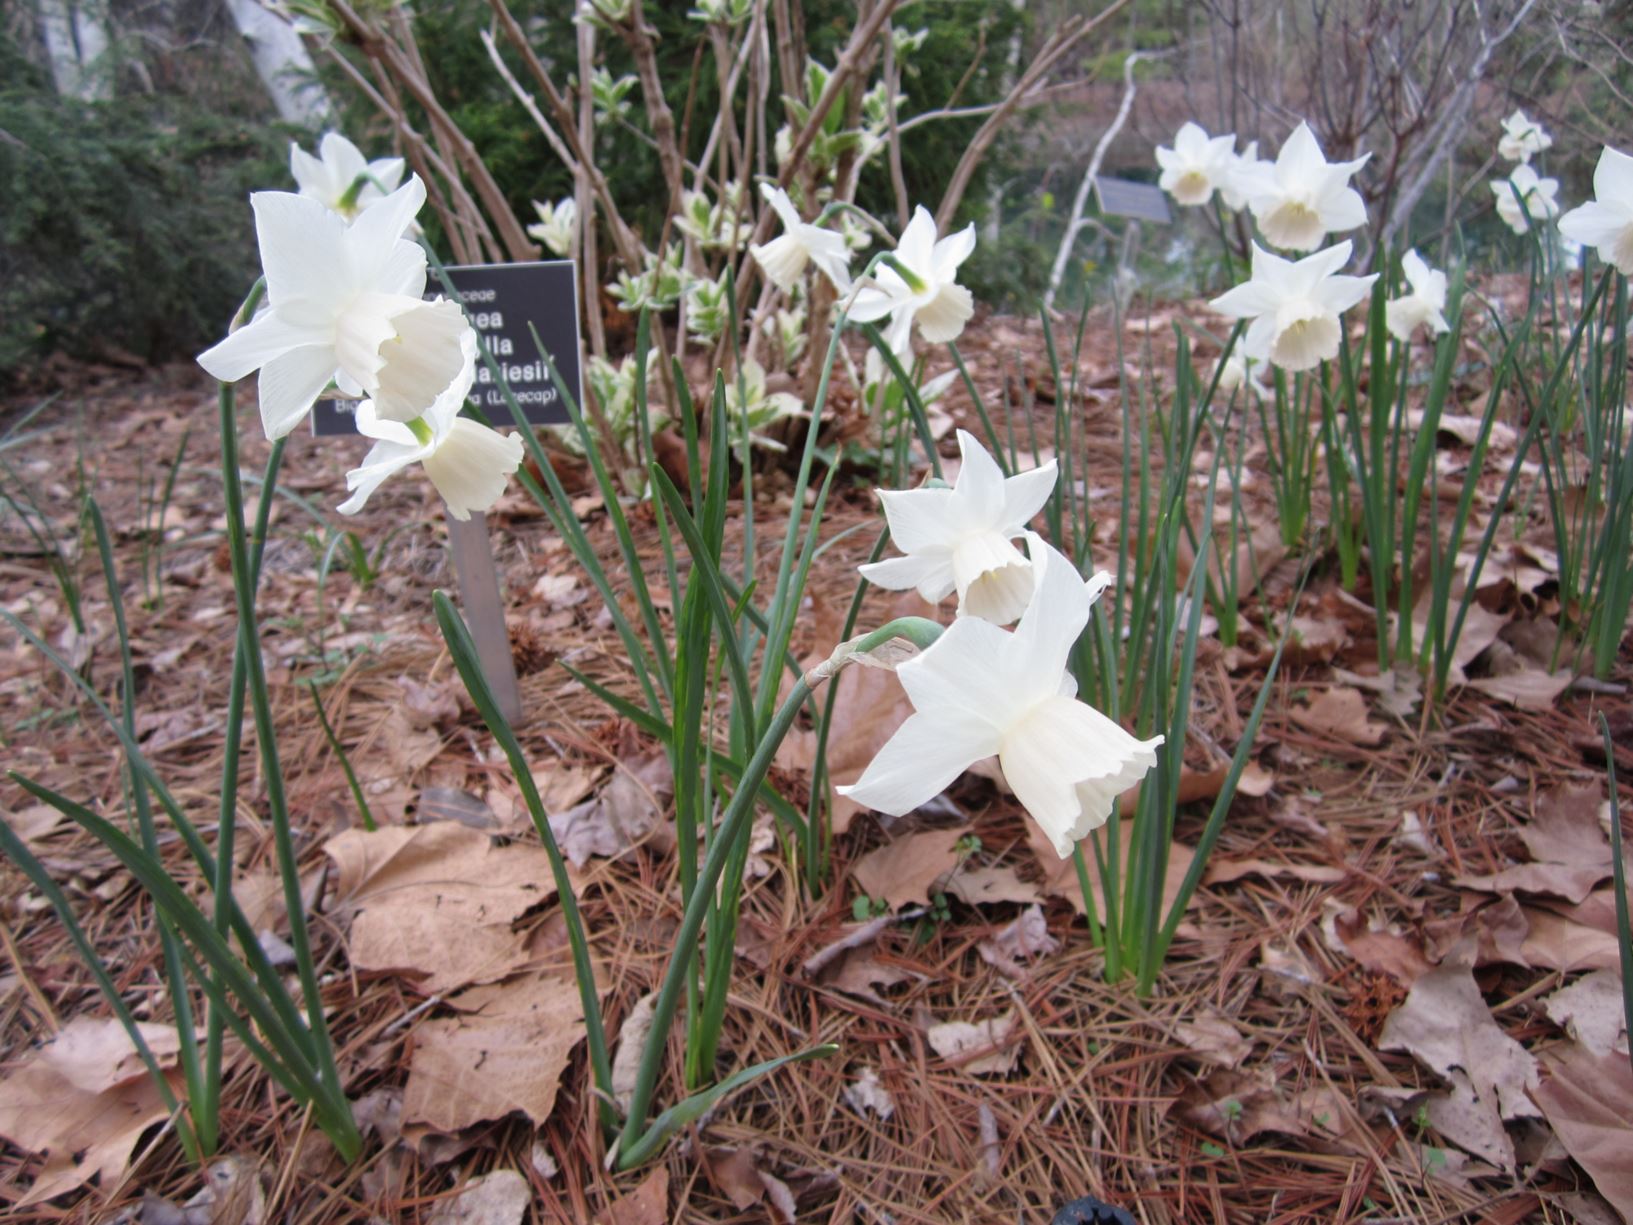 Narcissus 'Katie Heath' - triandrus daffodil